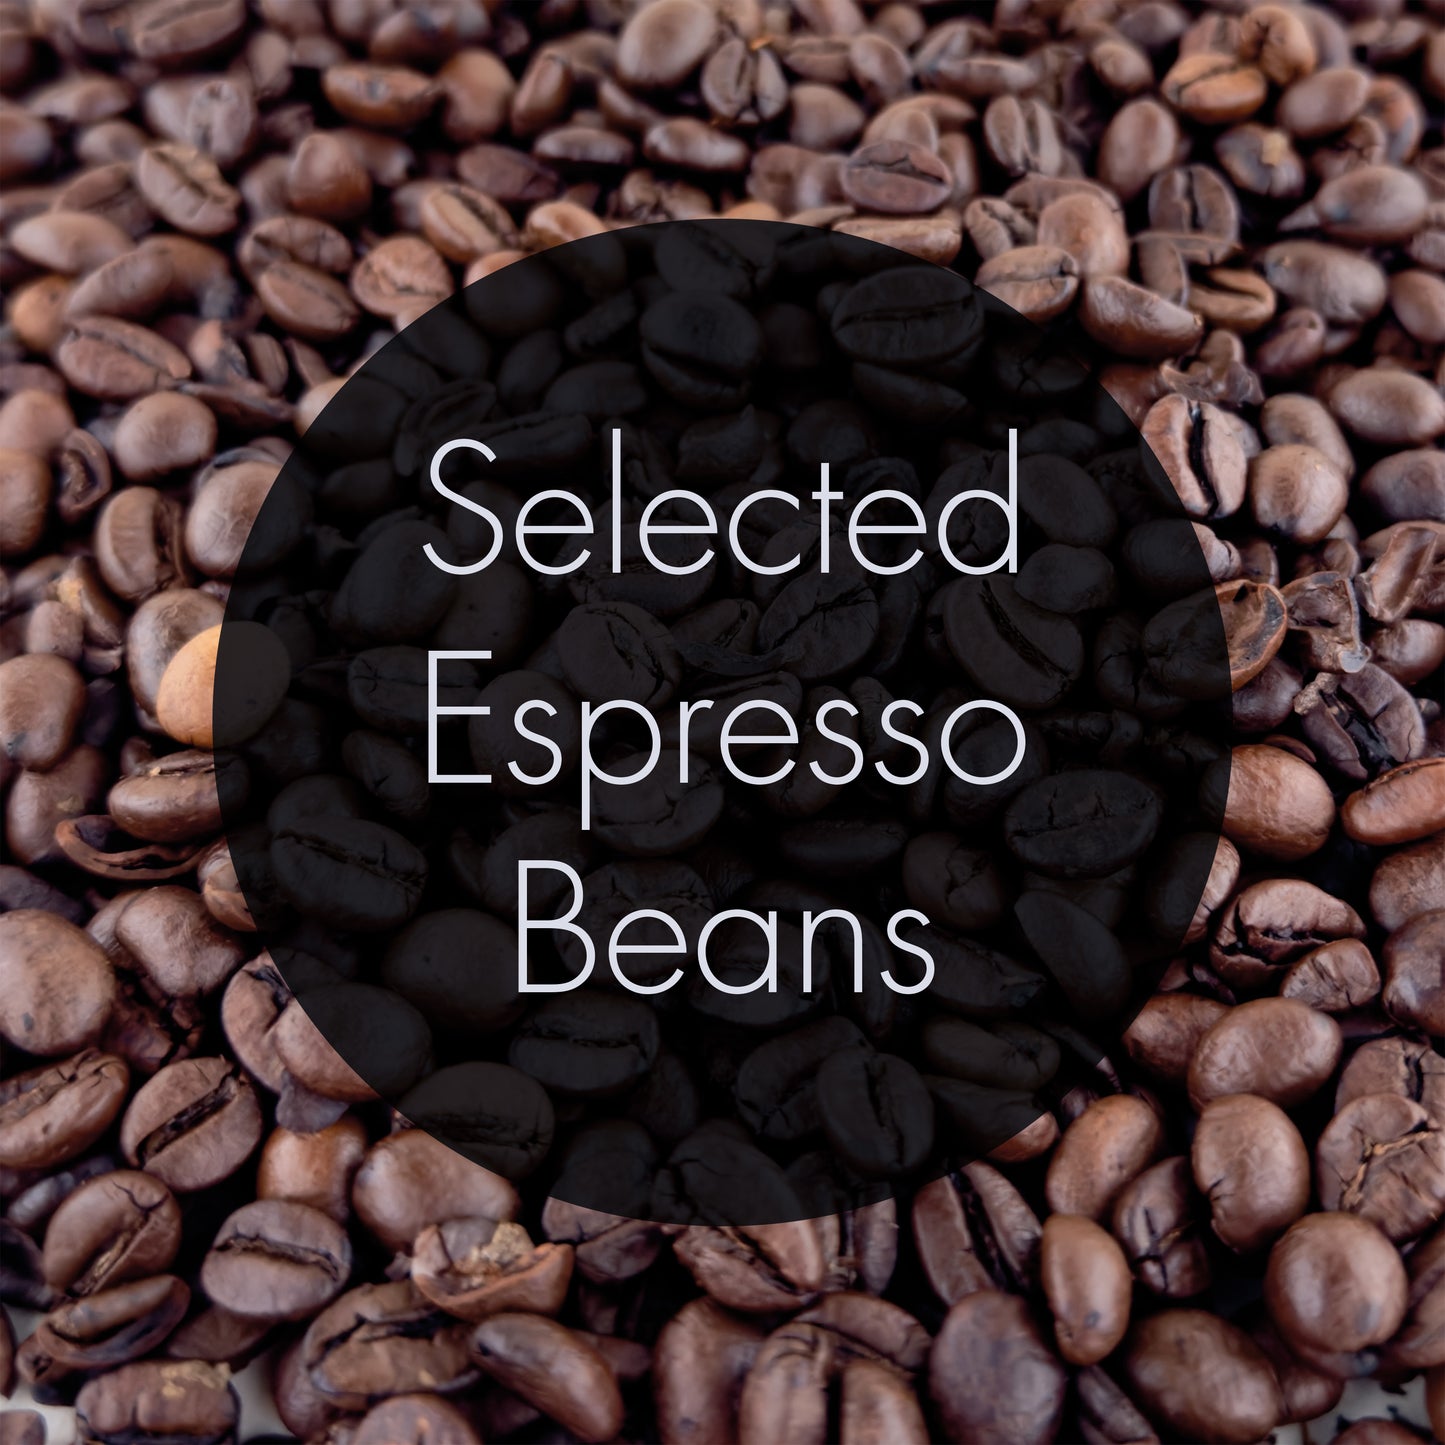 Exklusives Espressomaschinen Starter Set! Nur für die ersten 400 Bestellungen inklusive Distributor, Tamper, Waage, Timer, Glas und ausgewählte Espressobohnen!